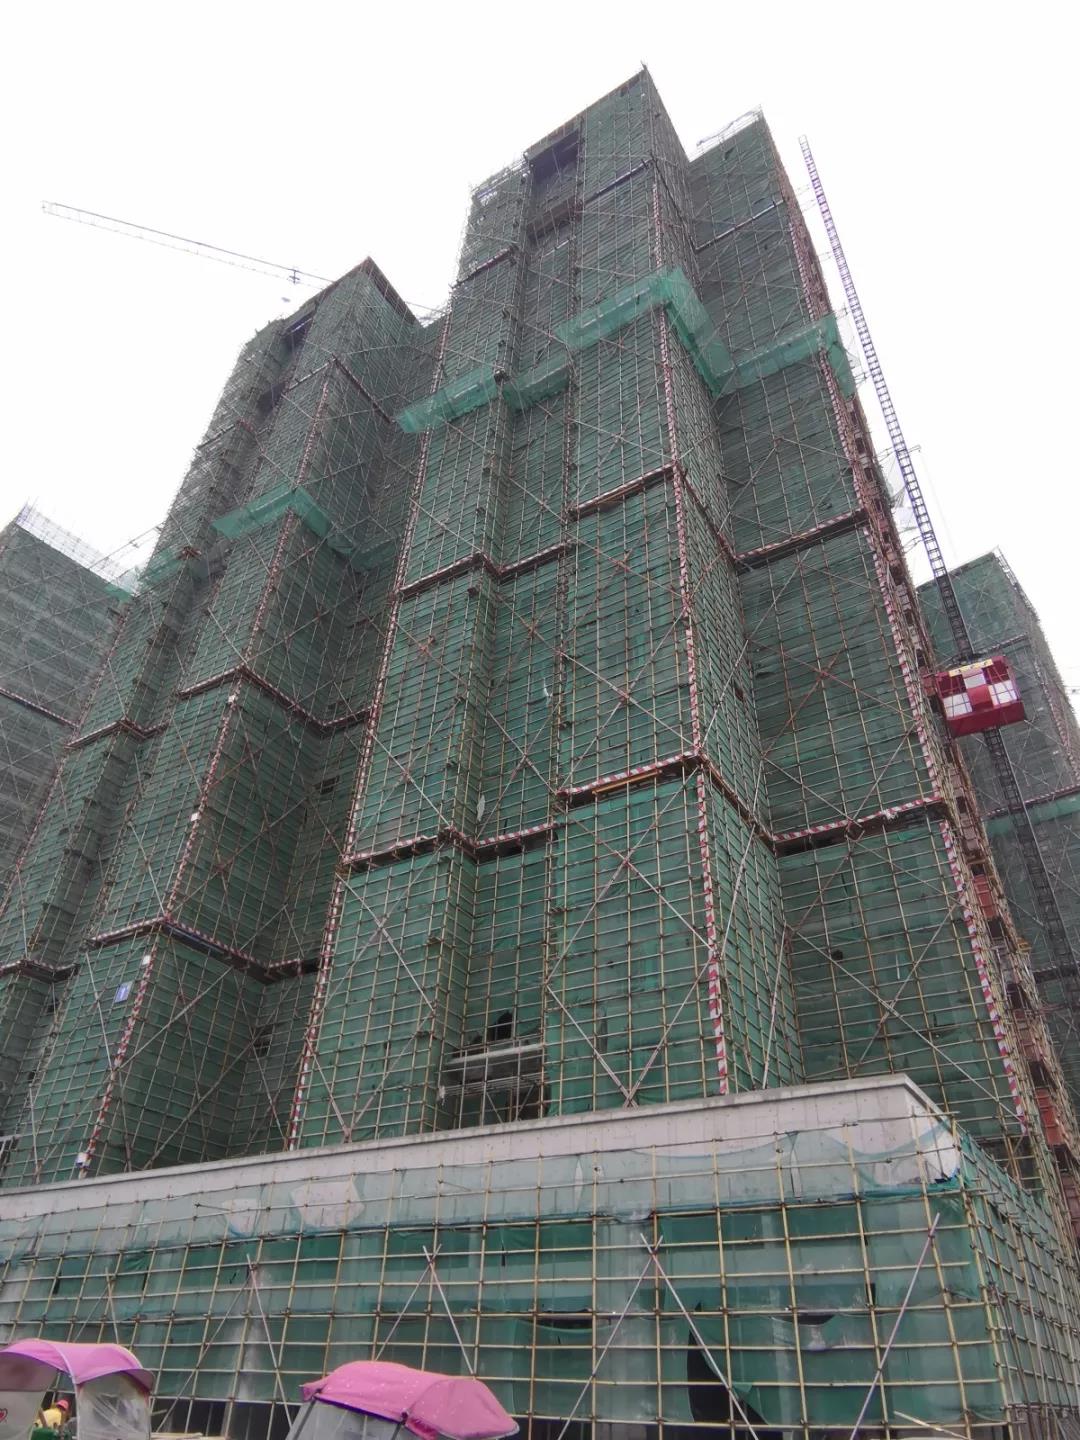 封顶大吉｜高铁南城项目工程已全部封顶 即将进入下一个新的里程碑-中国网地产